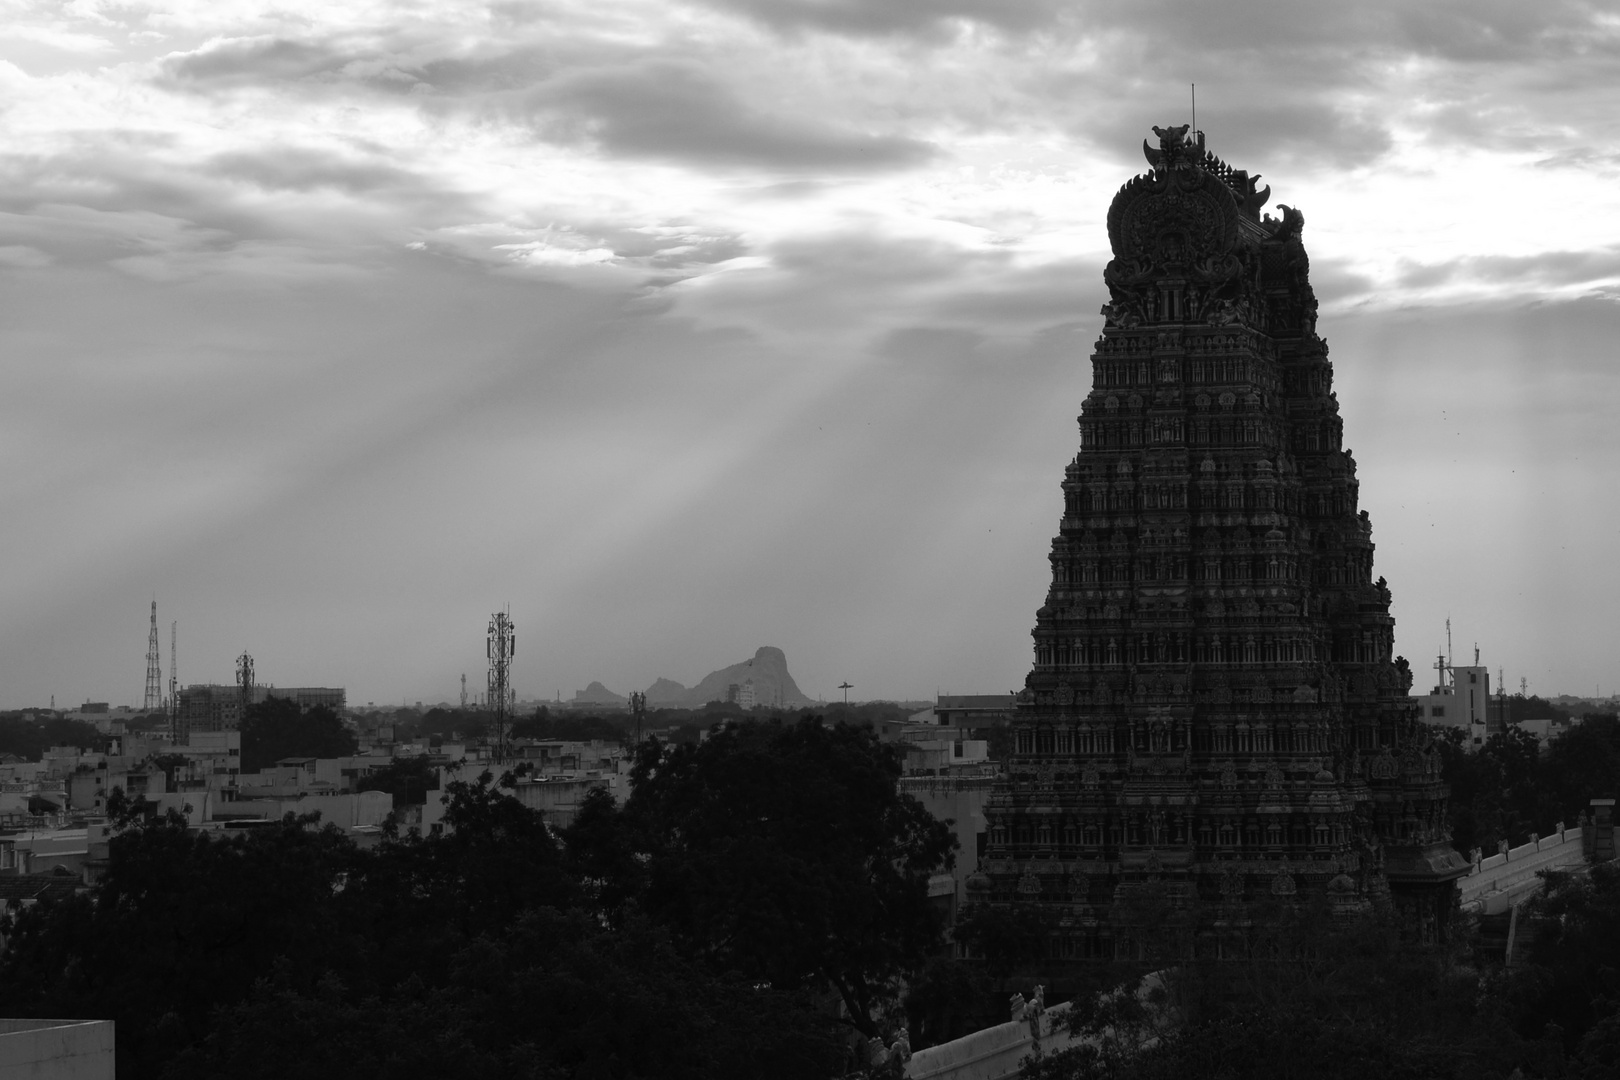 Temples in Madurai